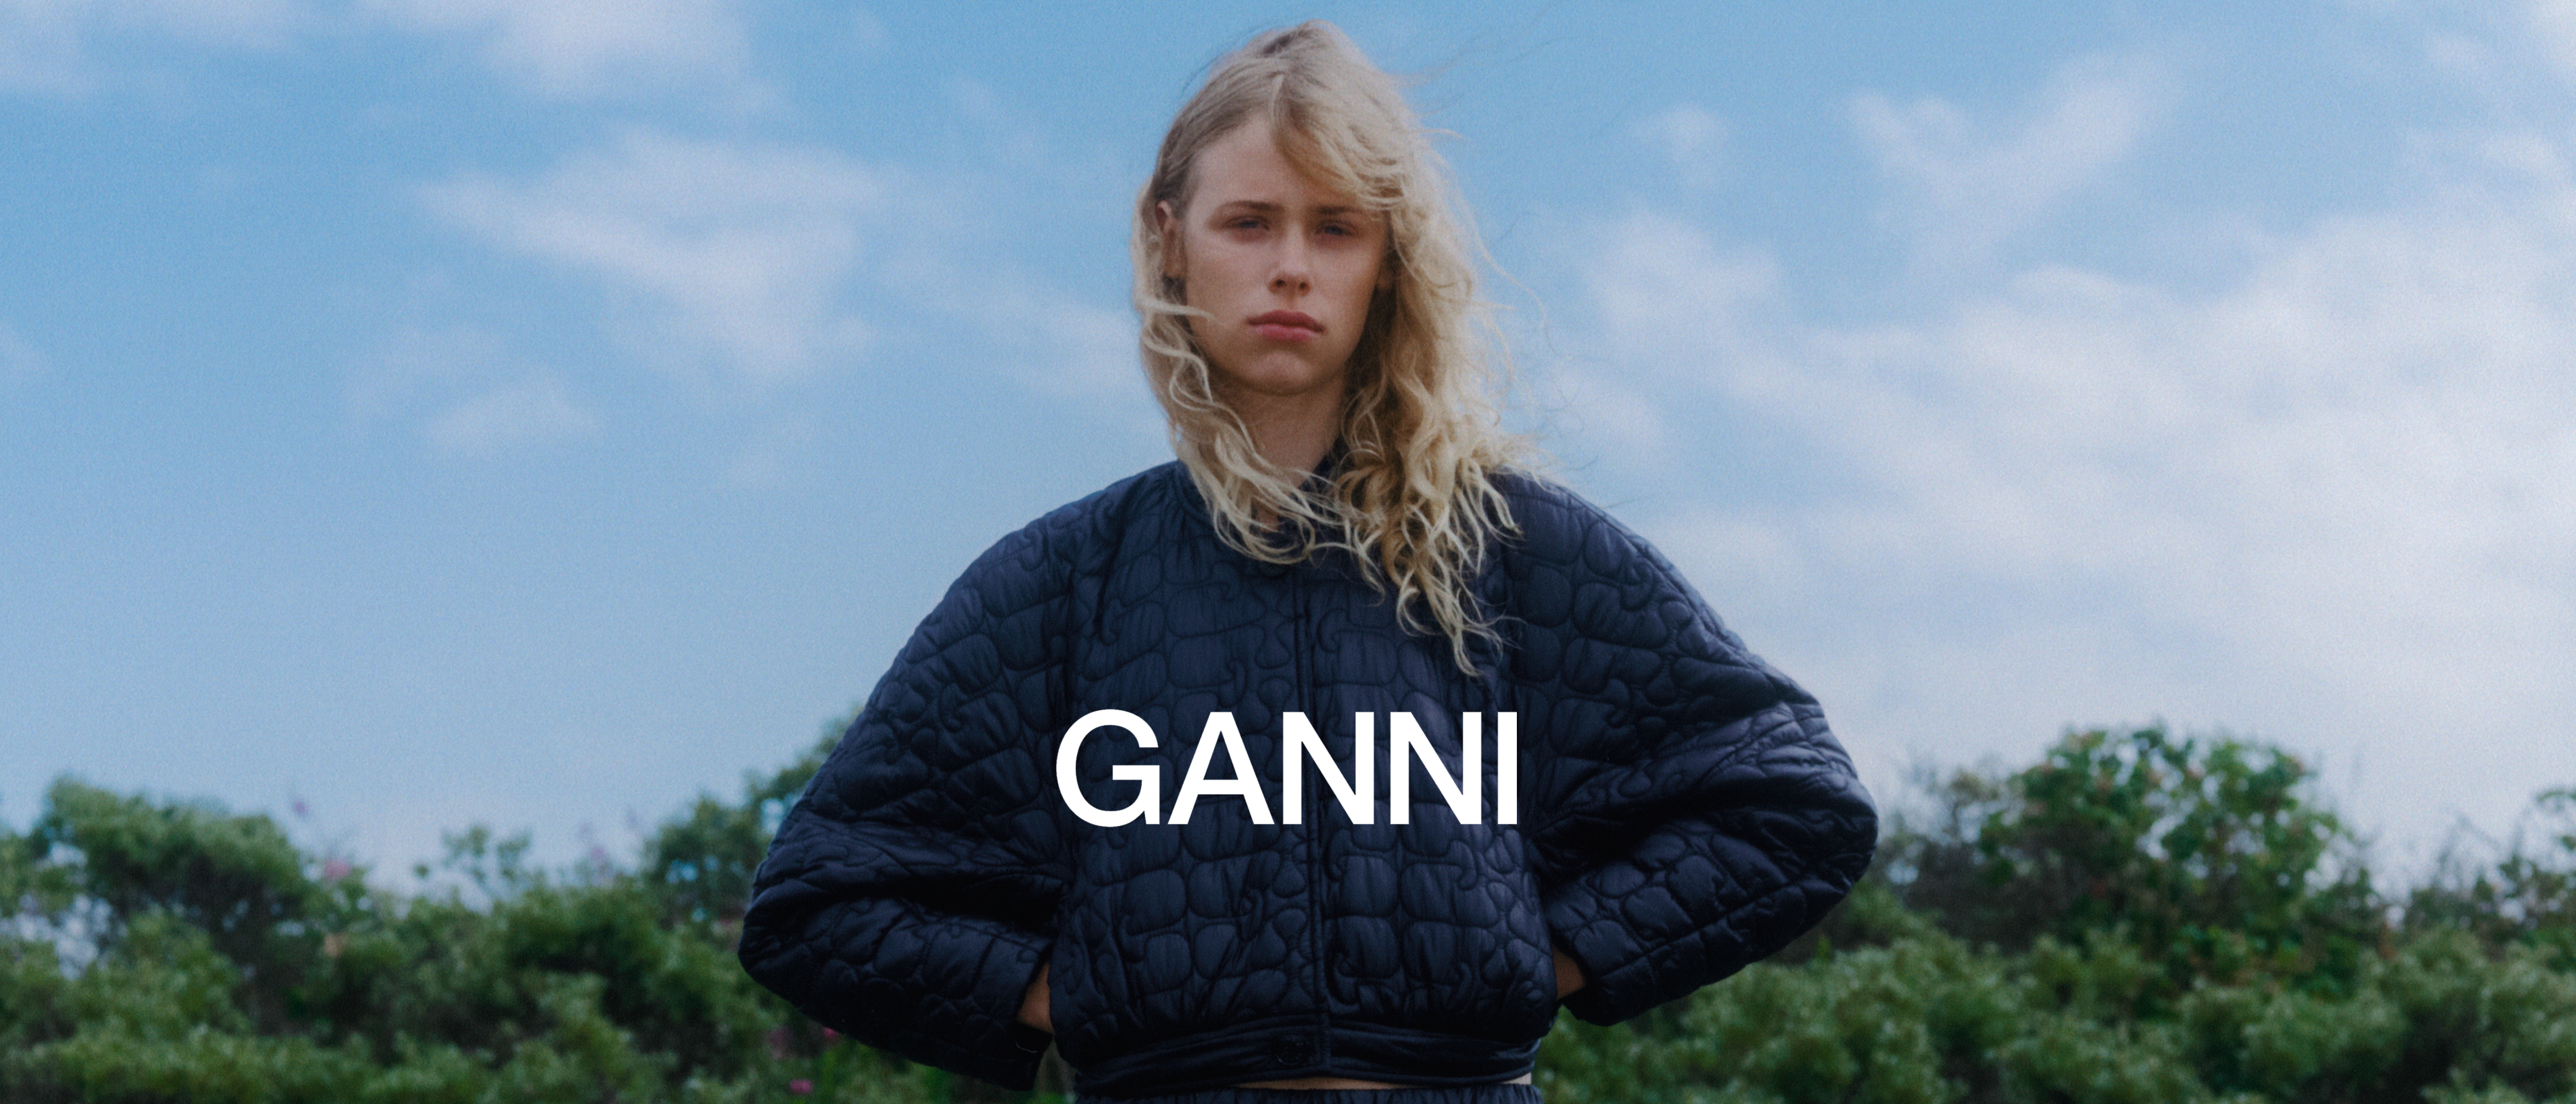 Introducing — GANNI